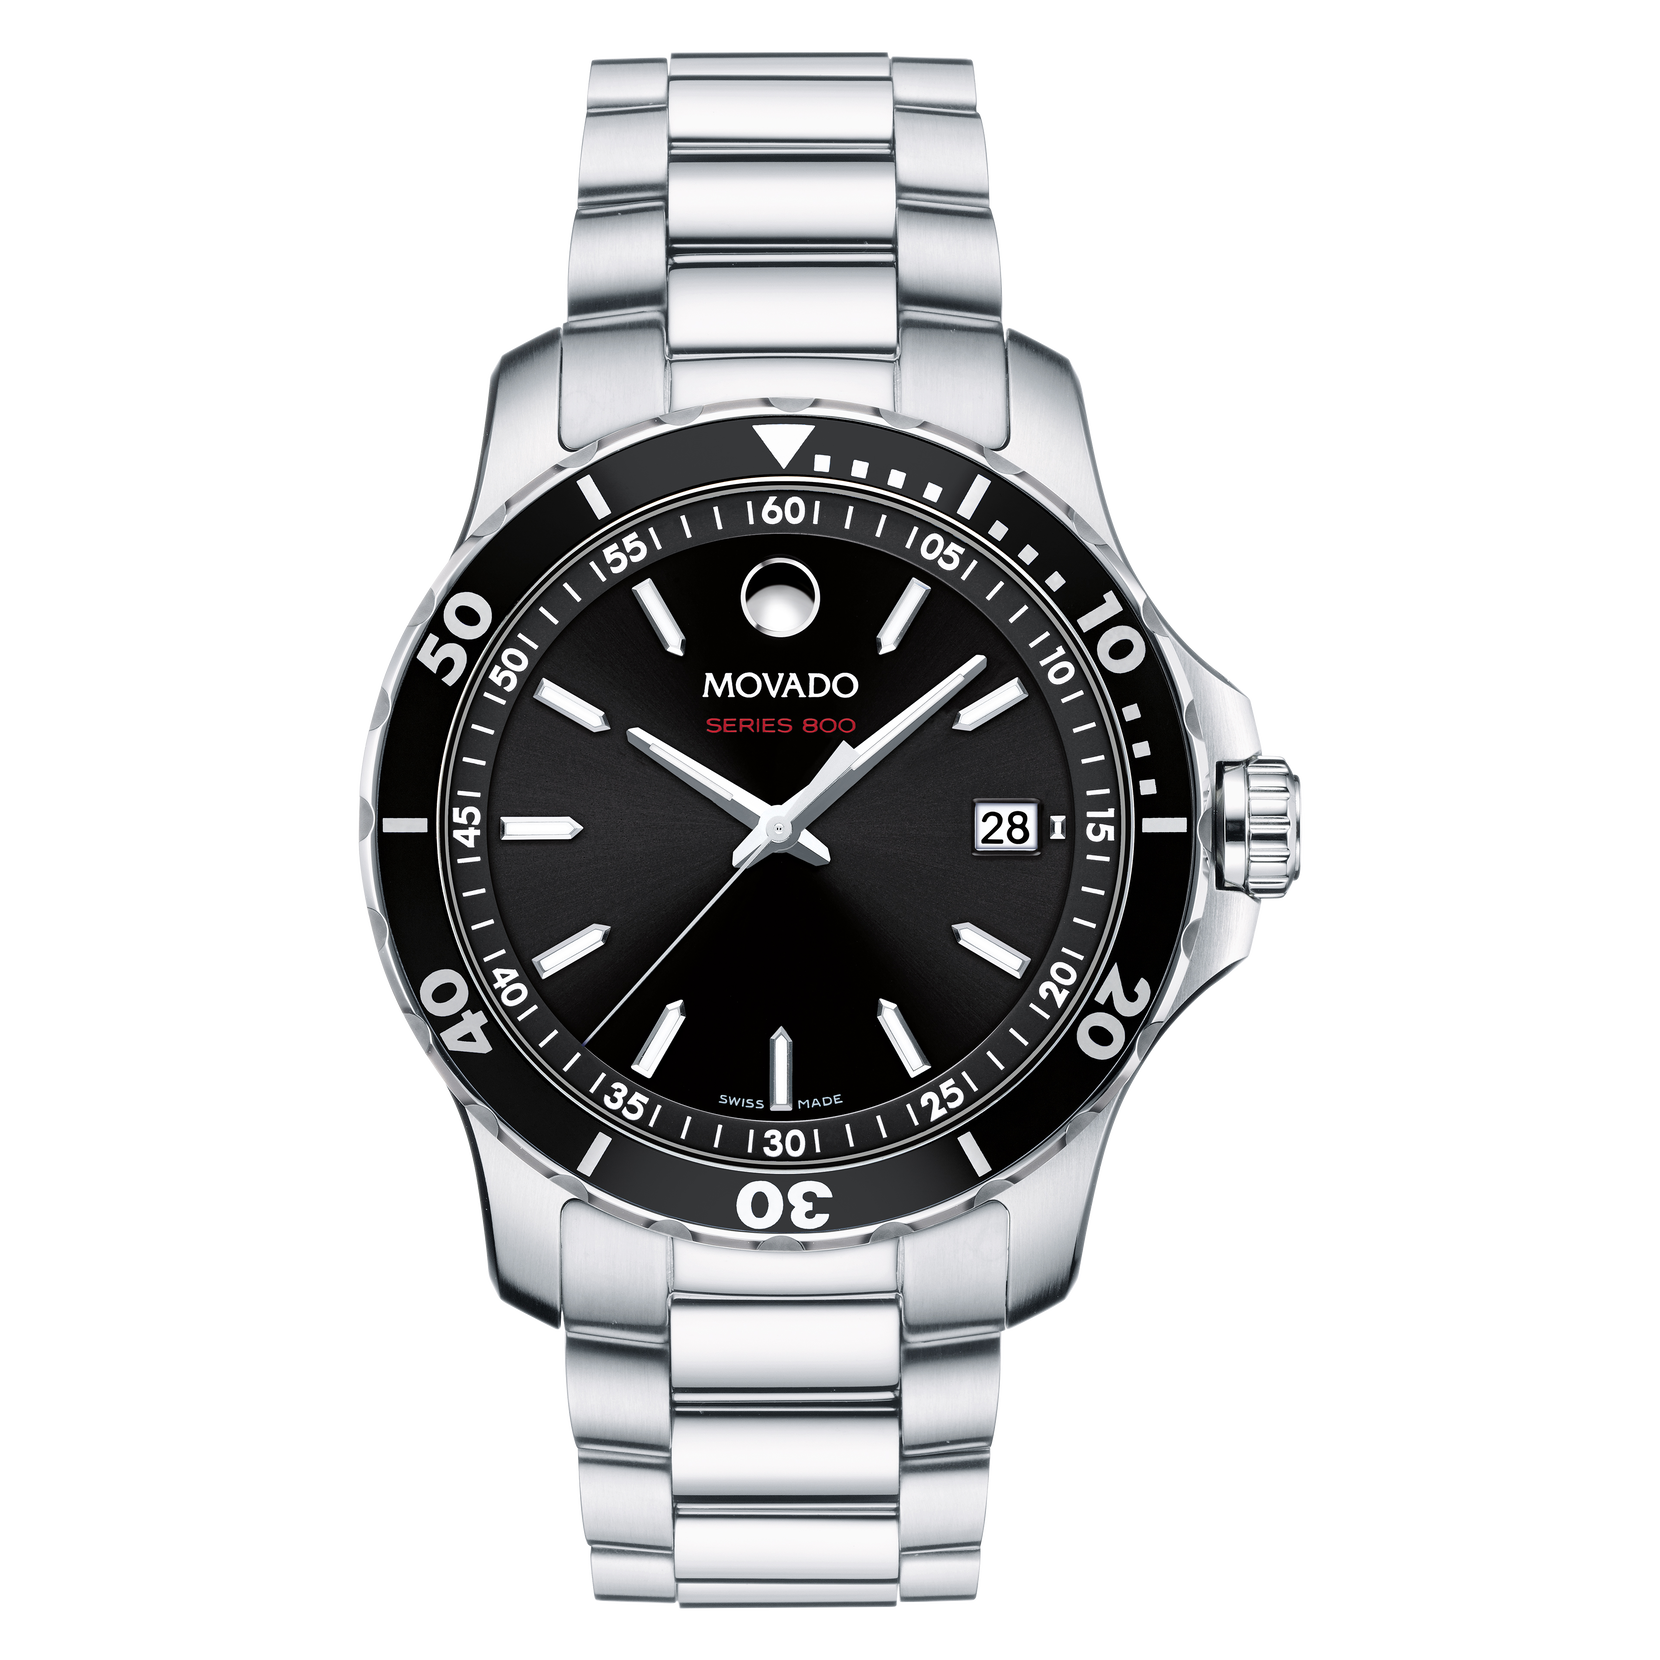 Men's Series 800 Watch 2600135 Movado